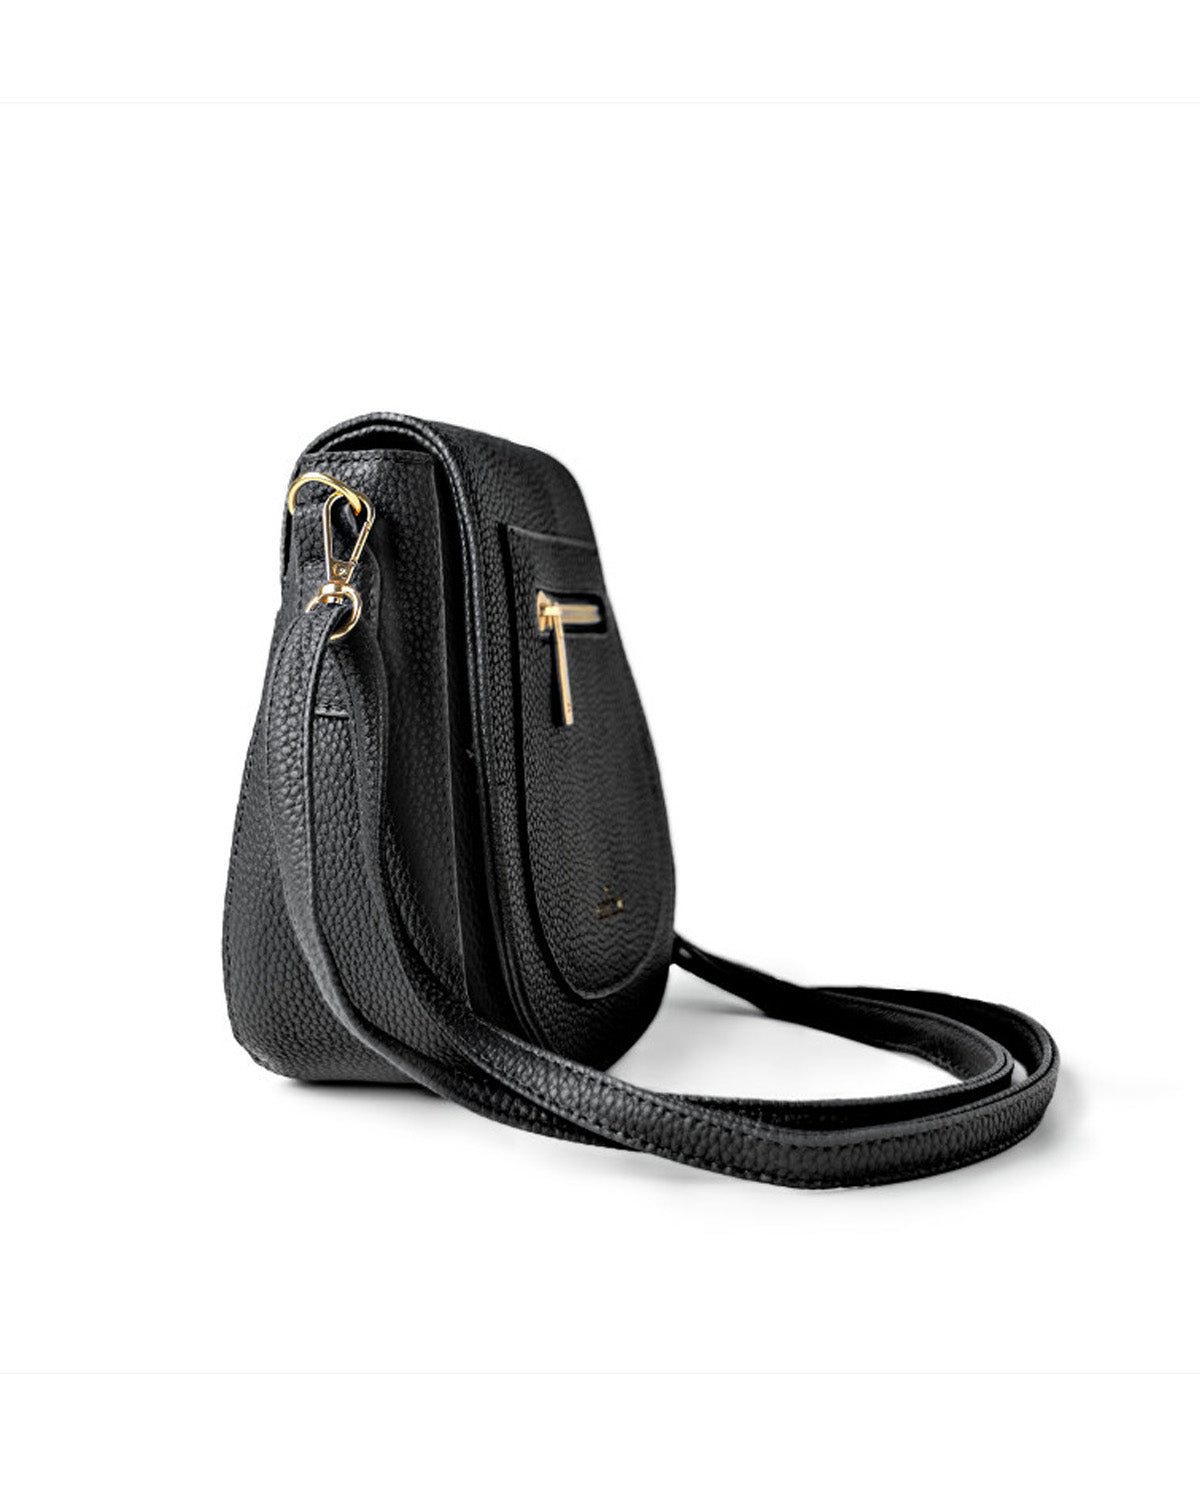 Camden Mini Messenger Bag in Vegan Leather